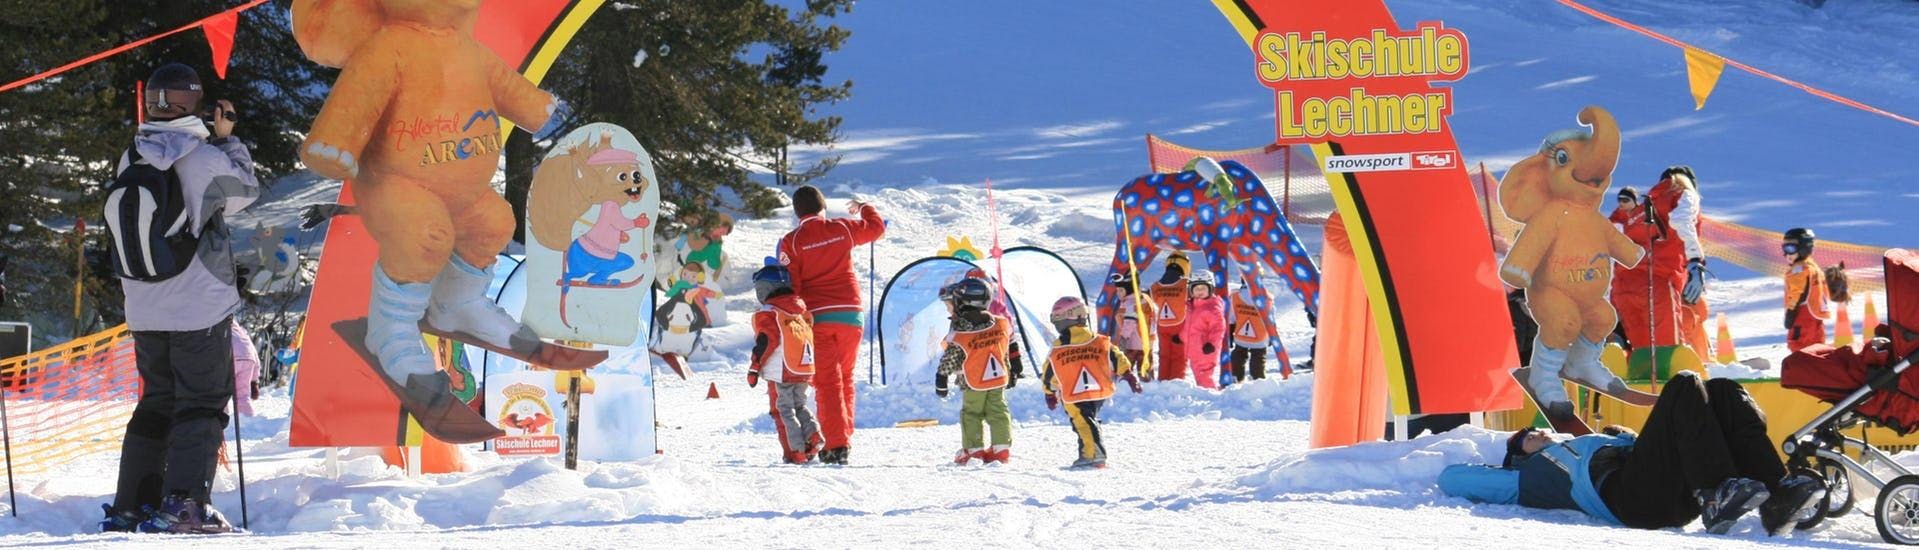 Eine Gruppe Kinder vergnügt sich beim Kinder Skikurs mit der Skischule Lechner in Zell am Ziller im Kinderland.